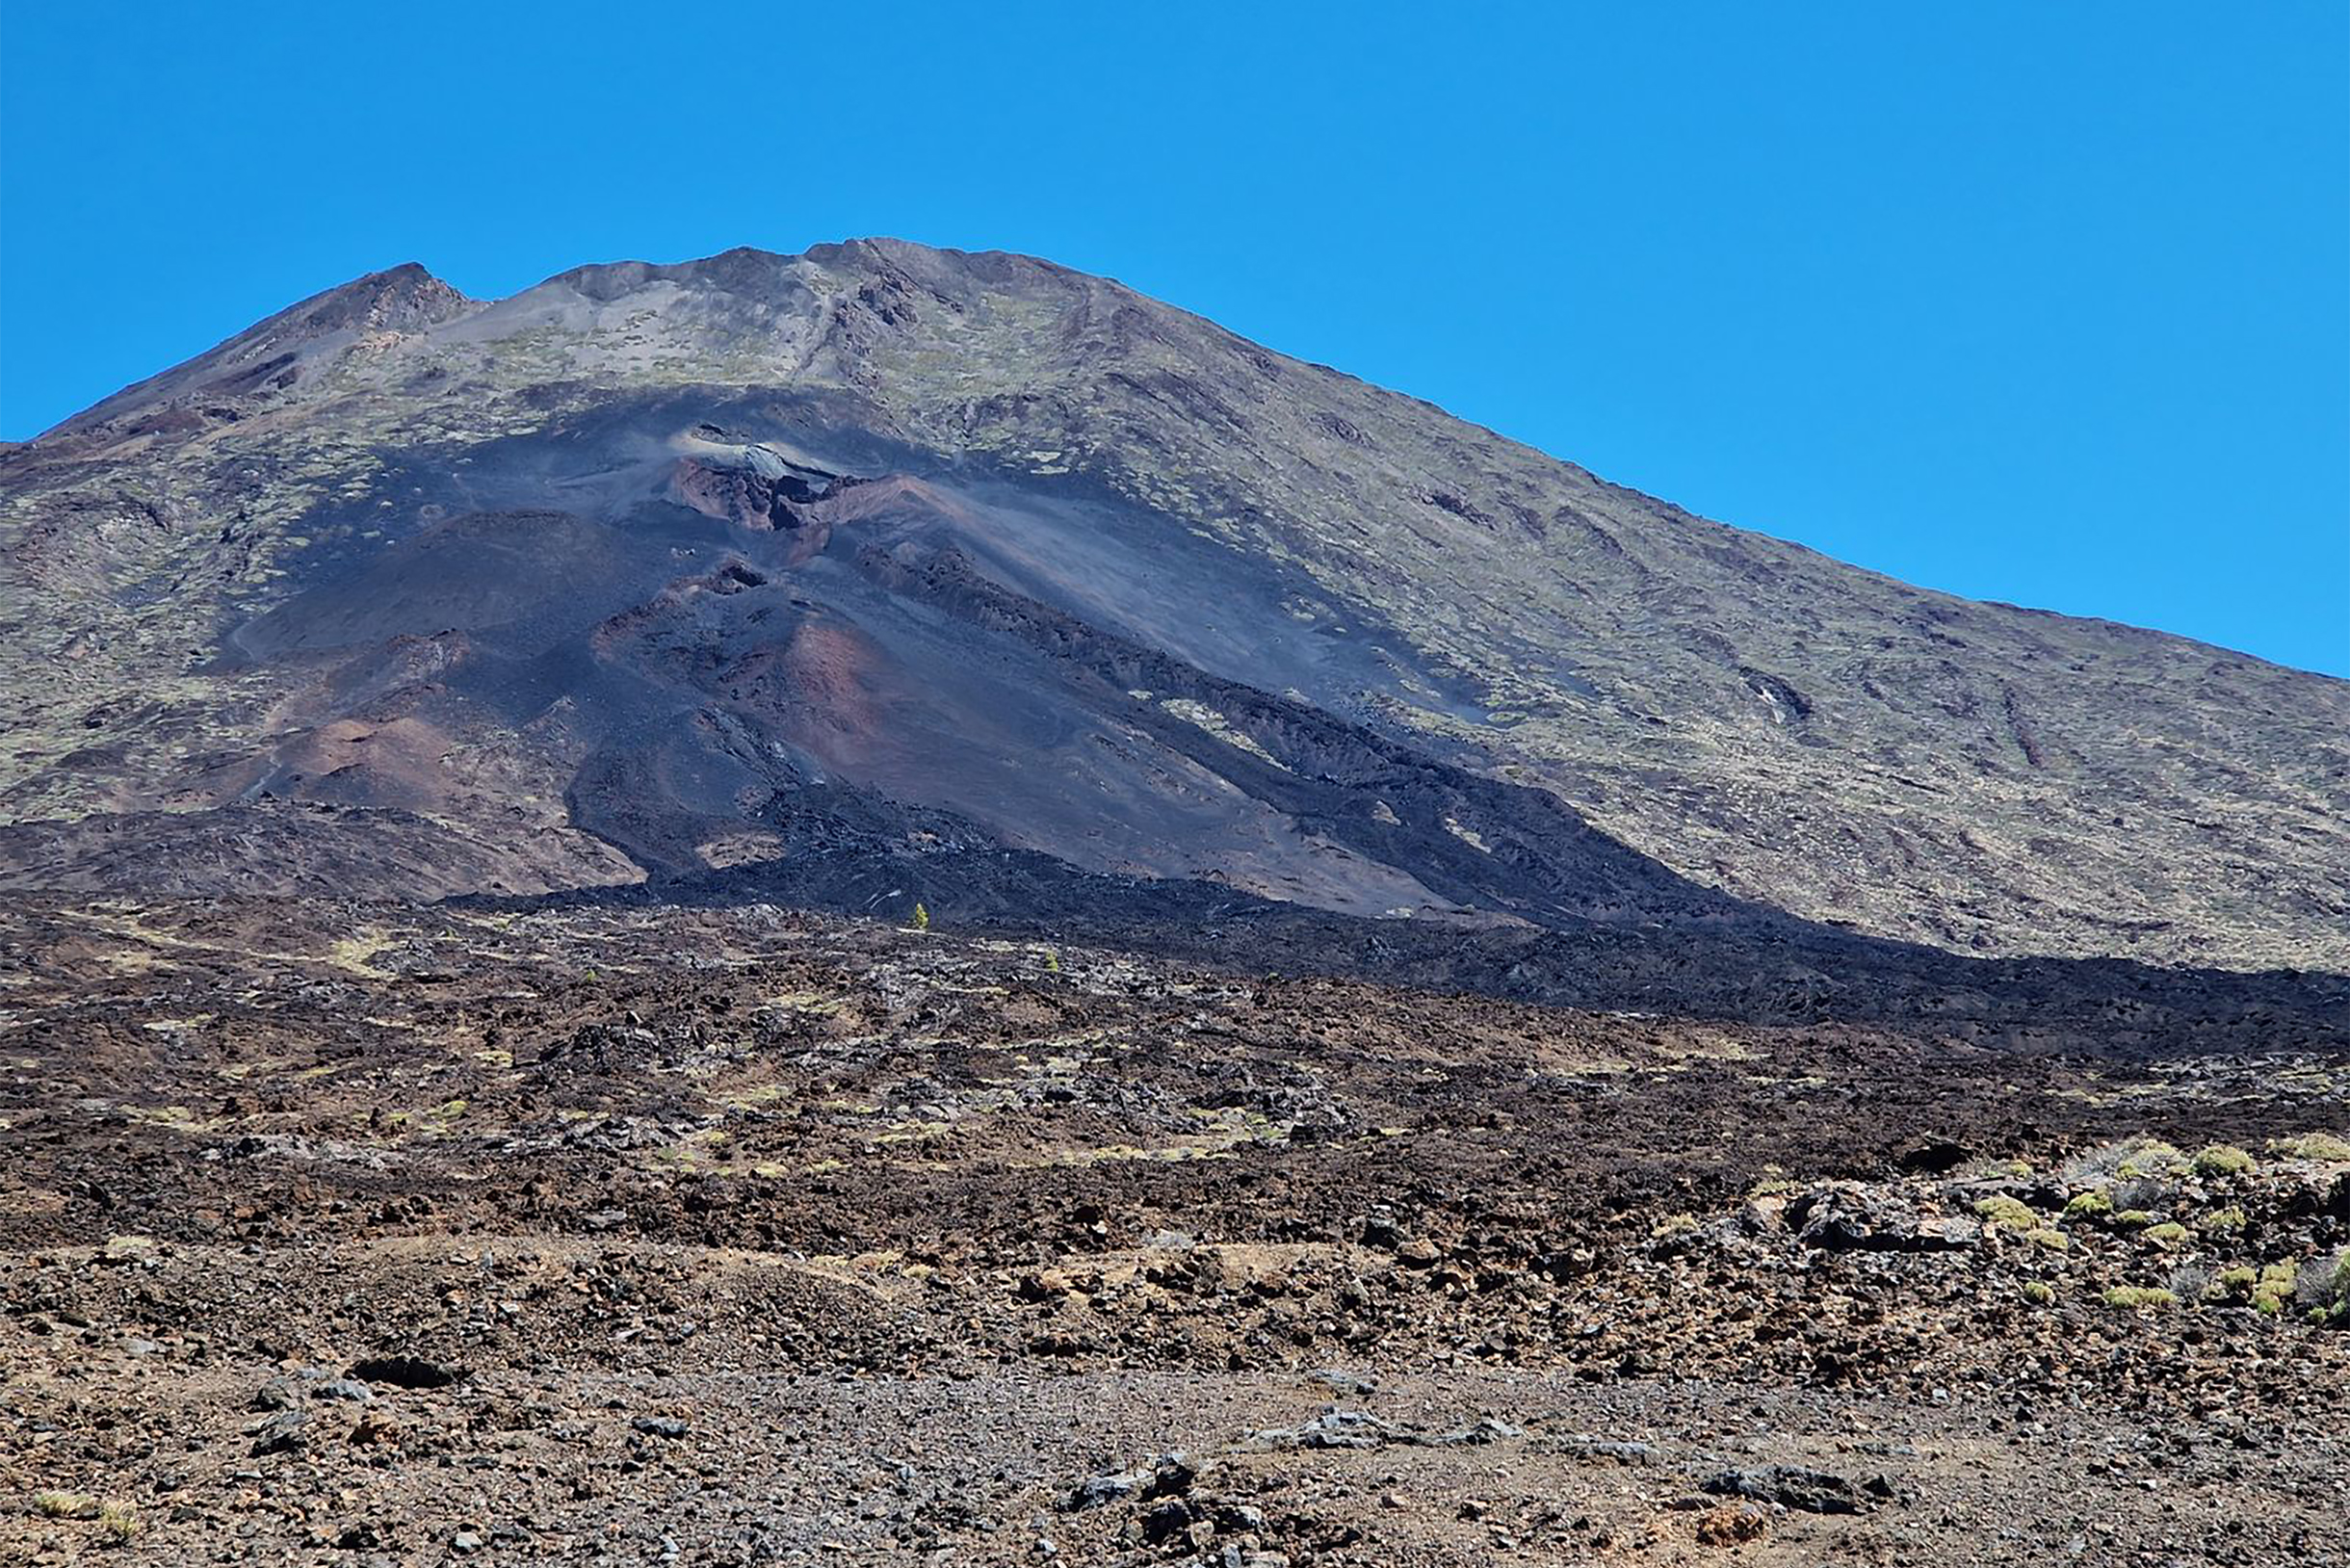 Припарковались у подножия вулкана. Виден нижний кратер и потоки лавы от извержения 1909 года